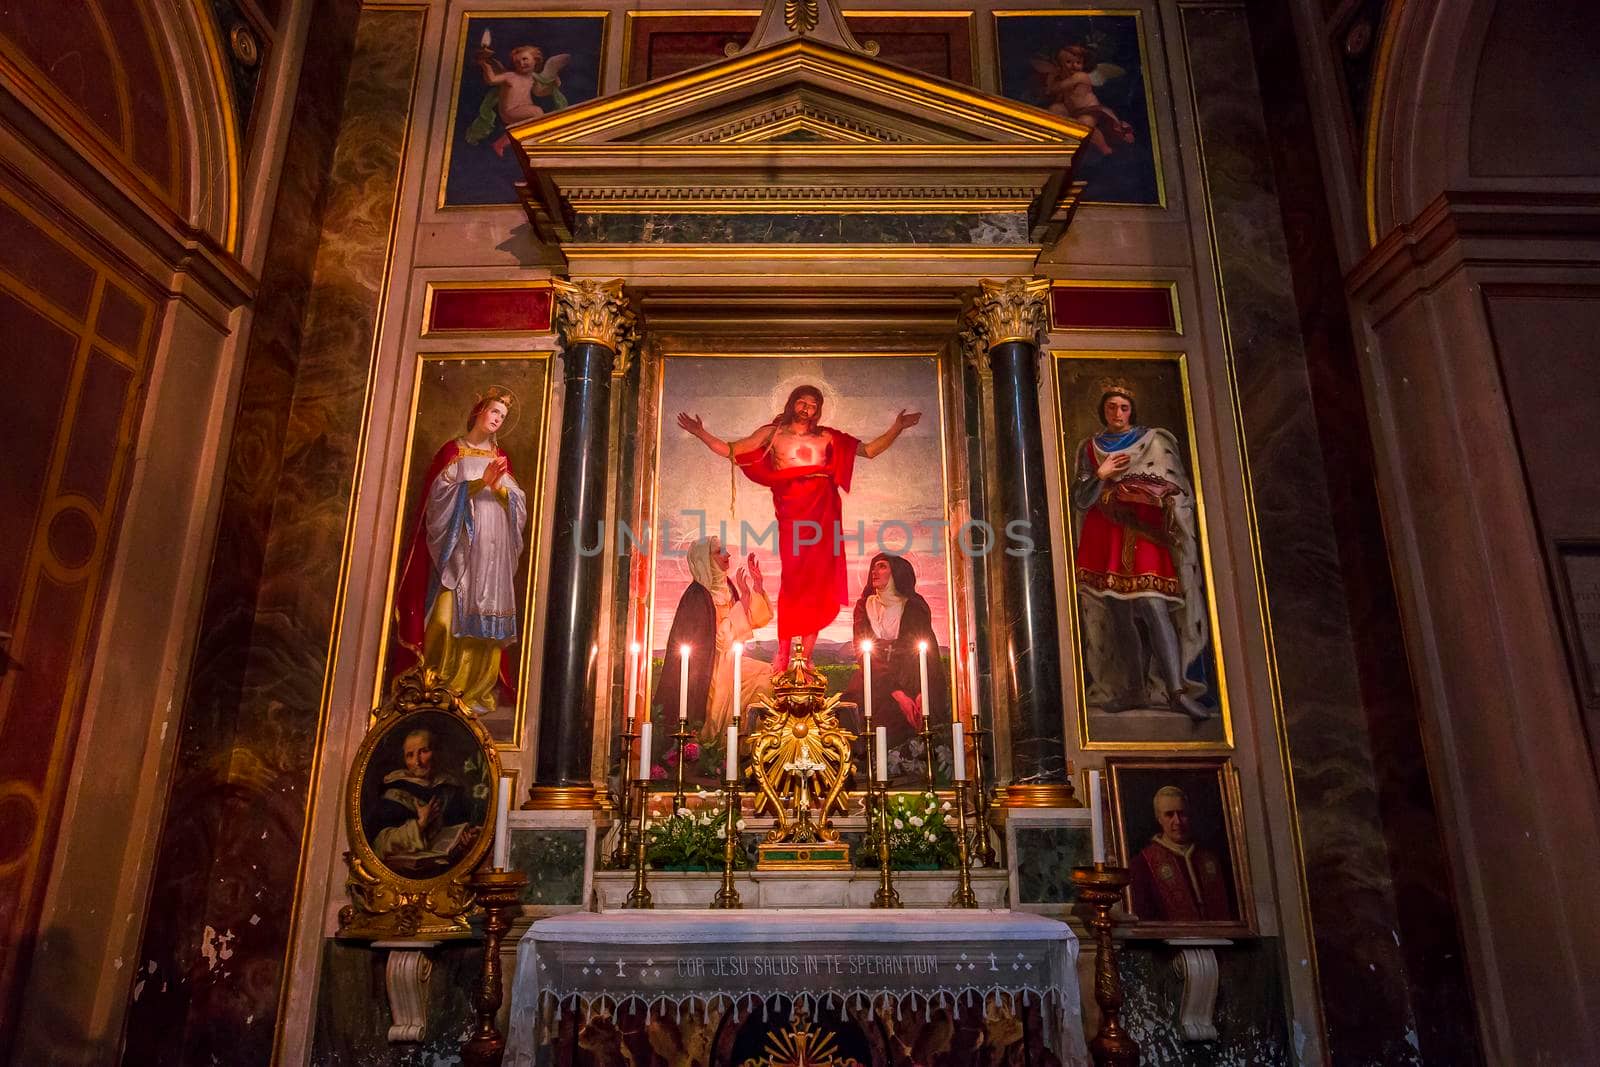 Santa Maria Sopra Minerva church, Rome, Italy by photogolfer